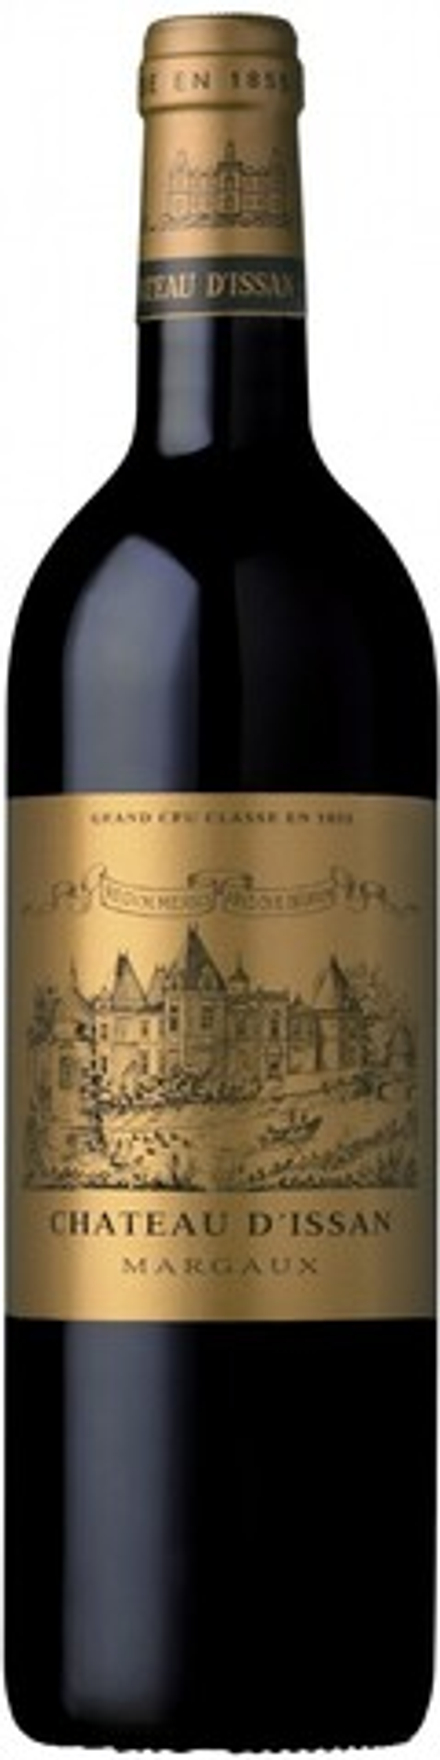 Вино Chateau d'Issan Grand cru classe Margaux AOC, 0,75 л.